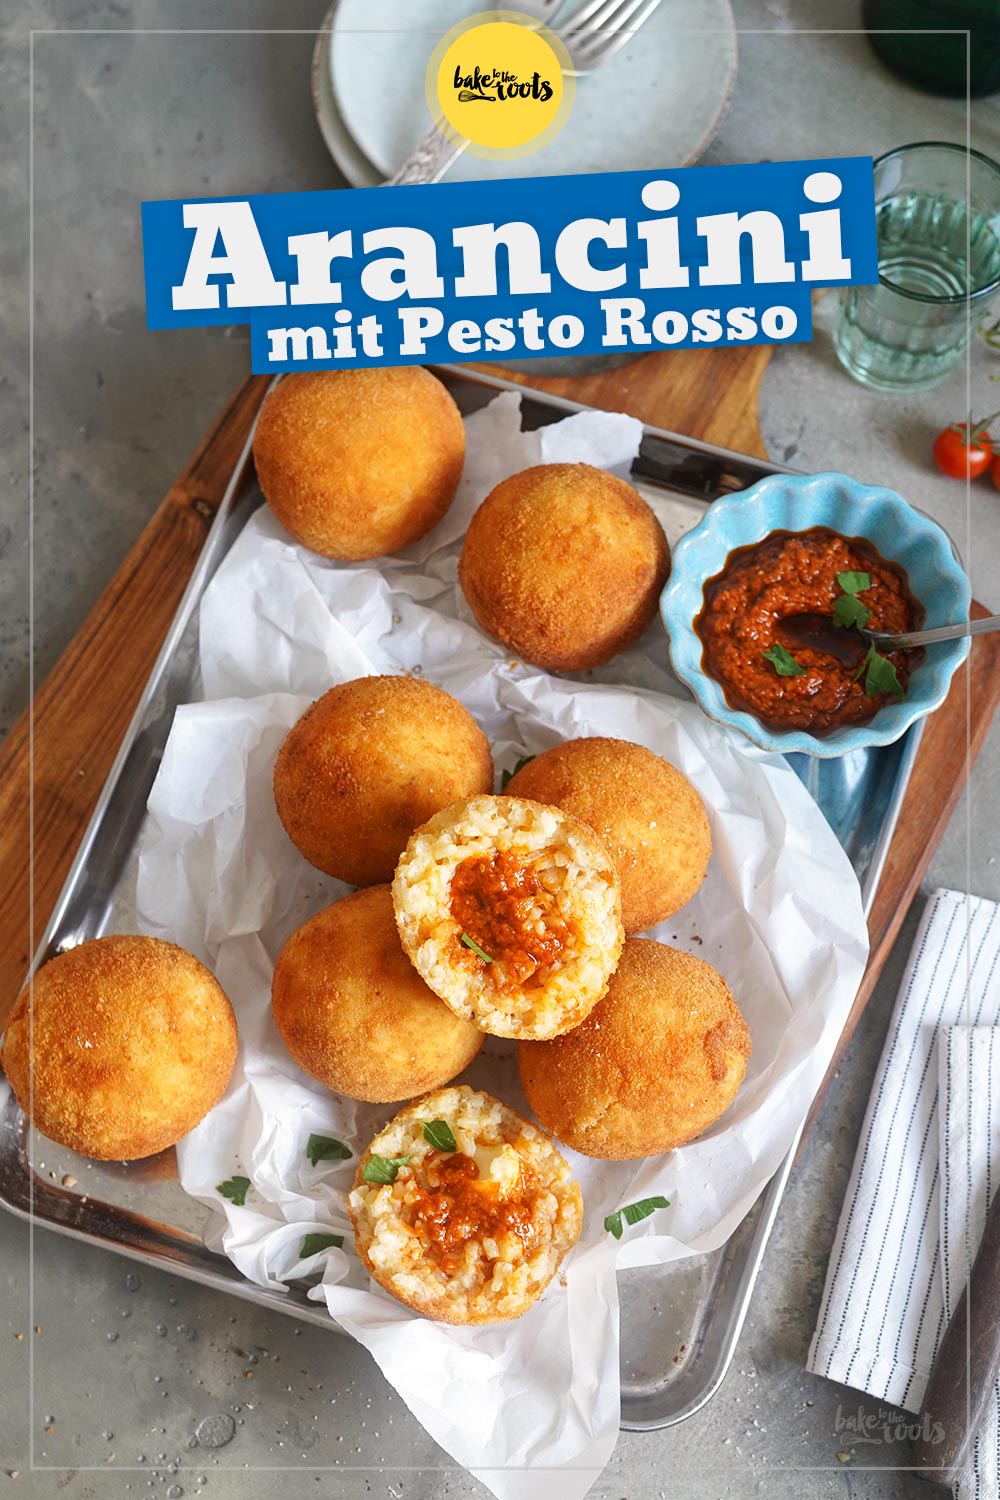 Arancini mit Pesto Rosso & Mozzarella | Bake to the roots